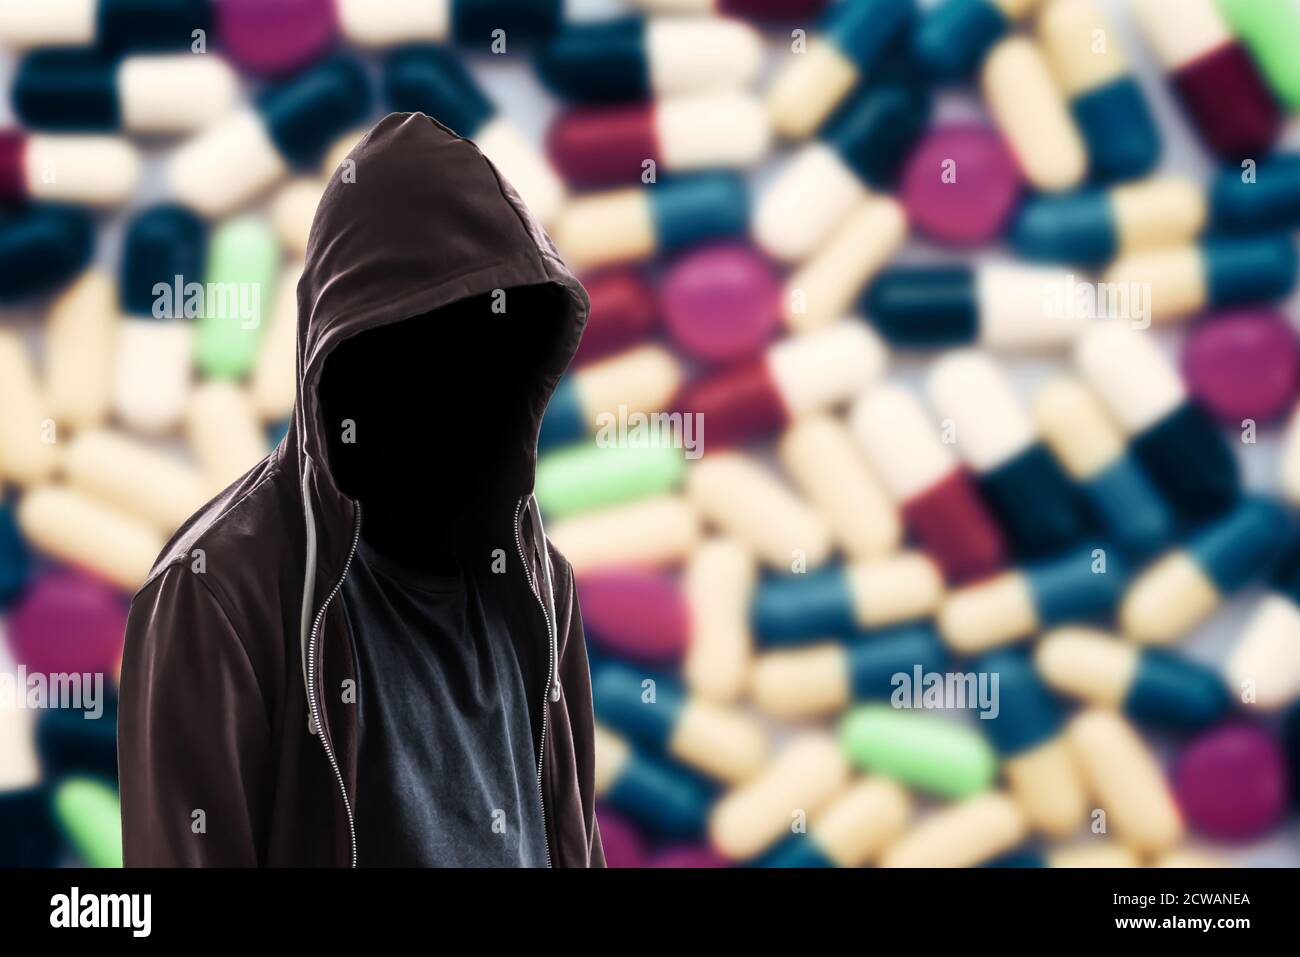 Invisible man on drug background. Drug dealer, medication addictions danger concept Stock Photo